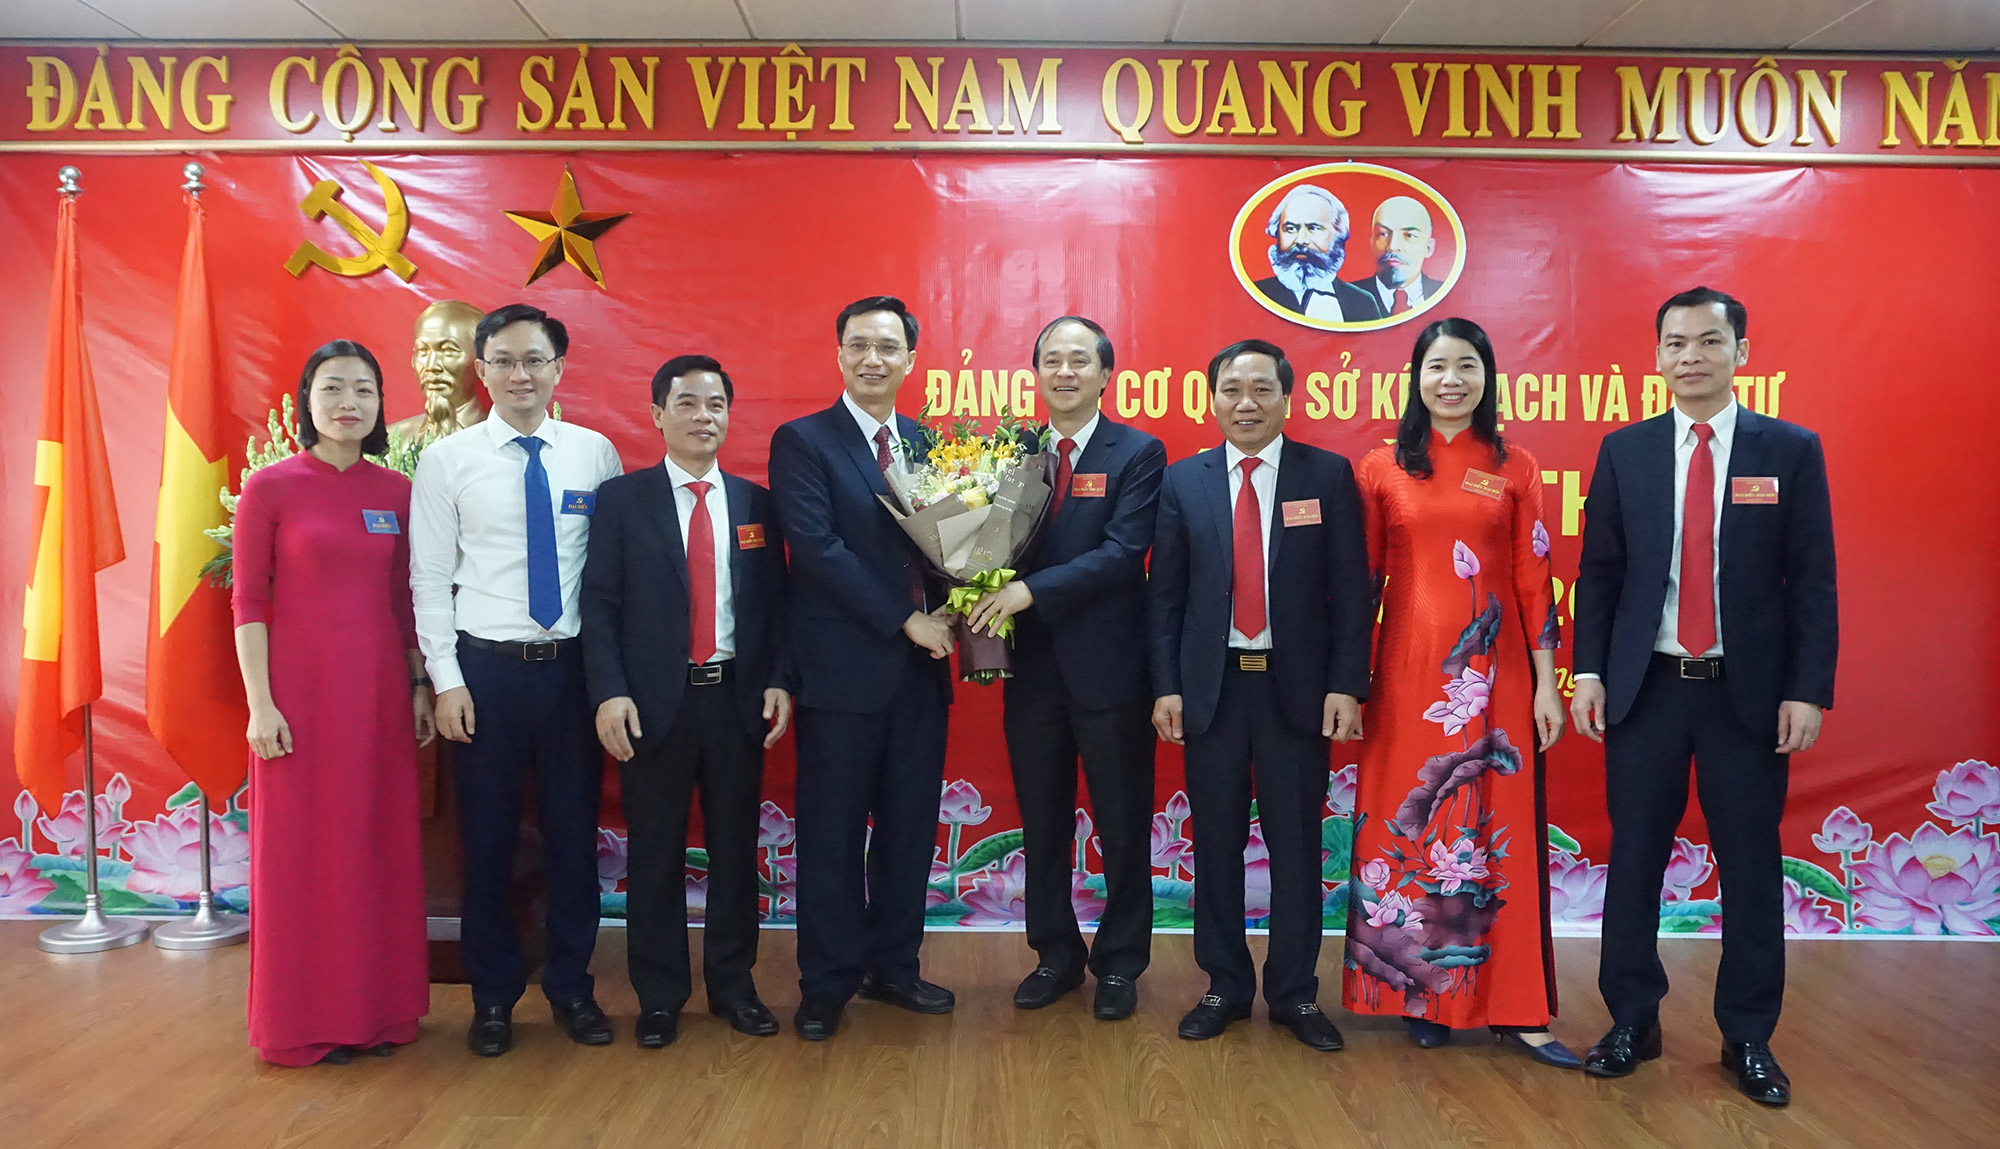 Đồng chí Nguyễn Mạnh Cường, Bí thư Đảng ủy Khối các cơ quan tỉnh, tặng hoa chúc mừng đại hội.